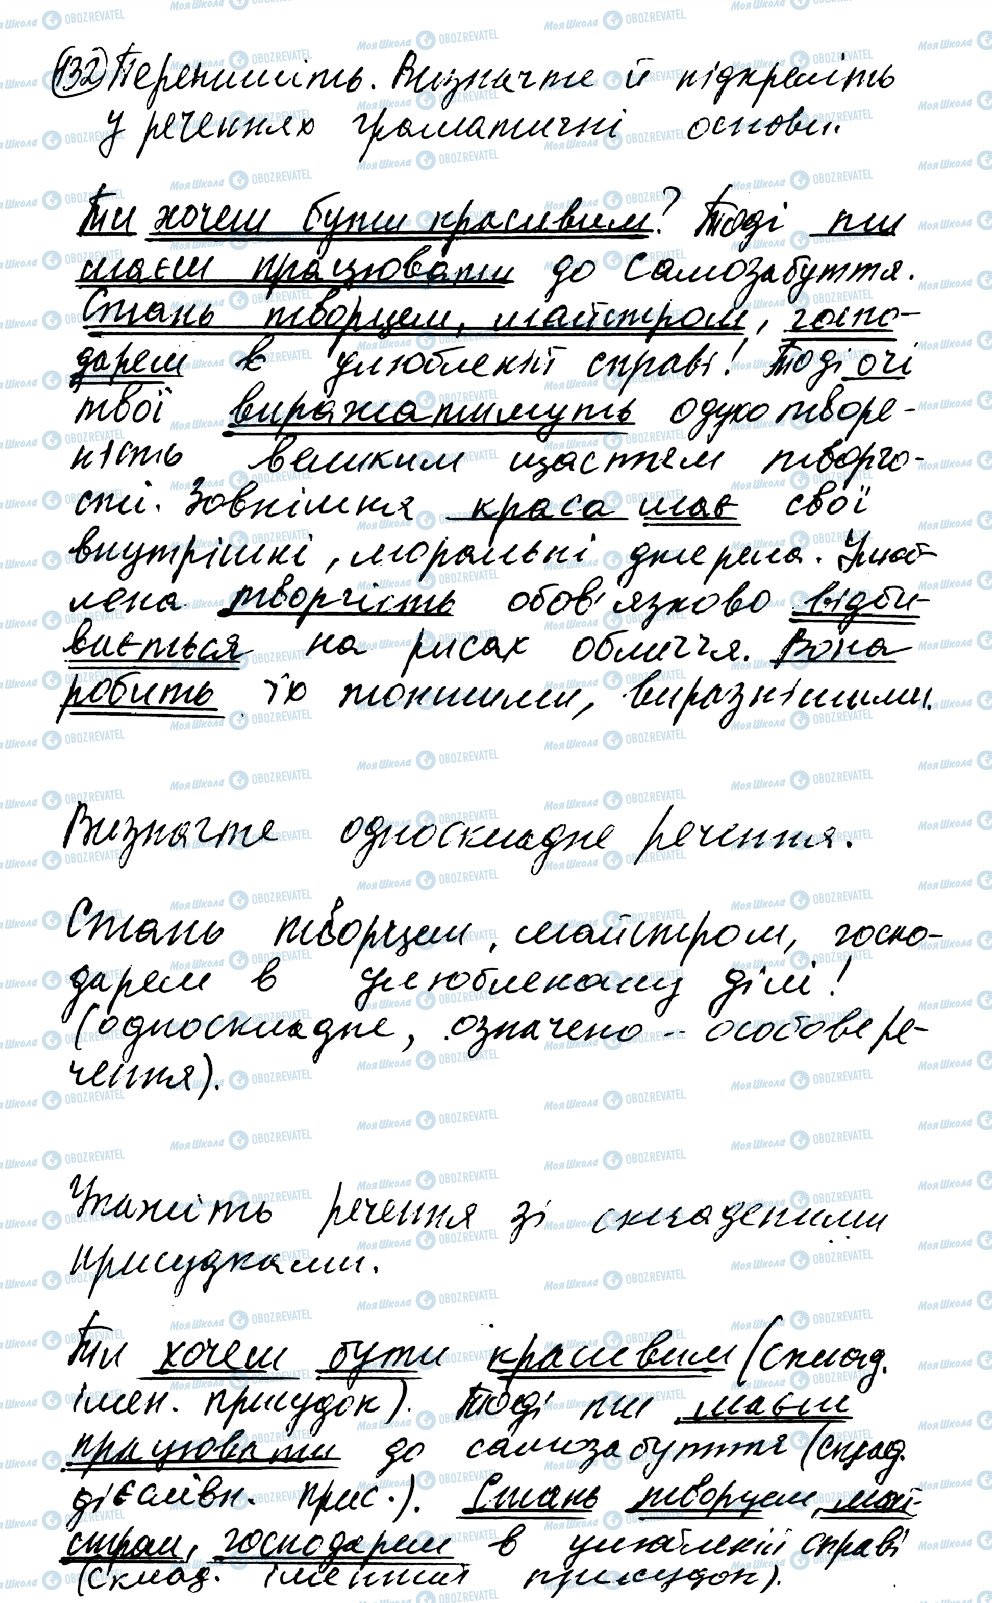 ГДЗ Українська мова 8 клас сторінка 132